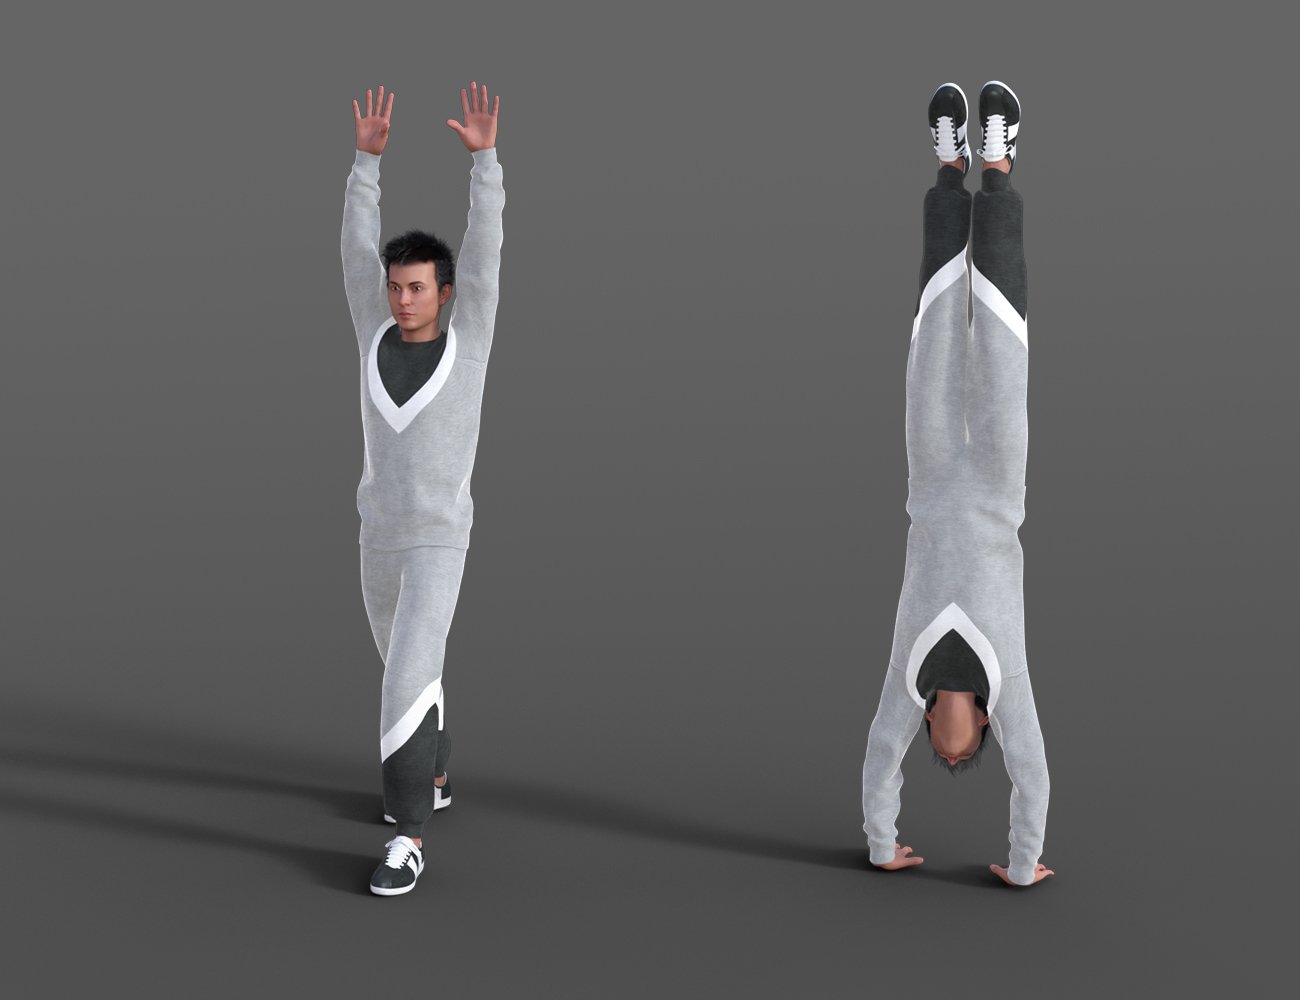 Gymnastic Animations for Genesis 8 by: ThreeDigital, 3D Models by Daz 3D